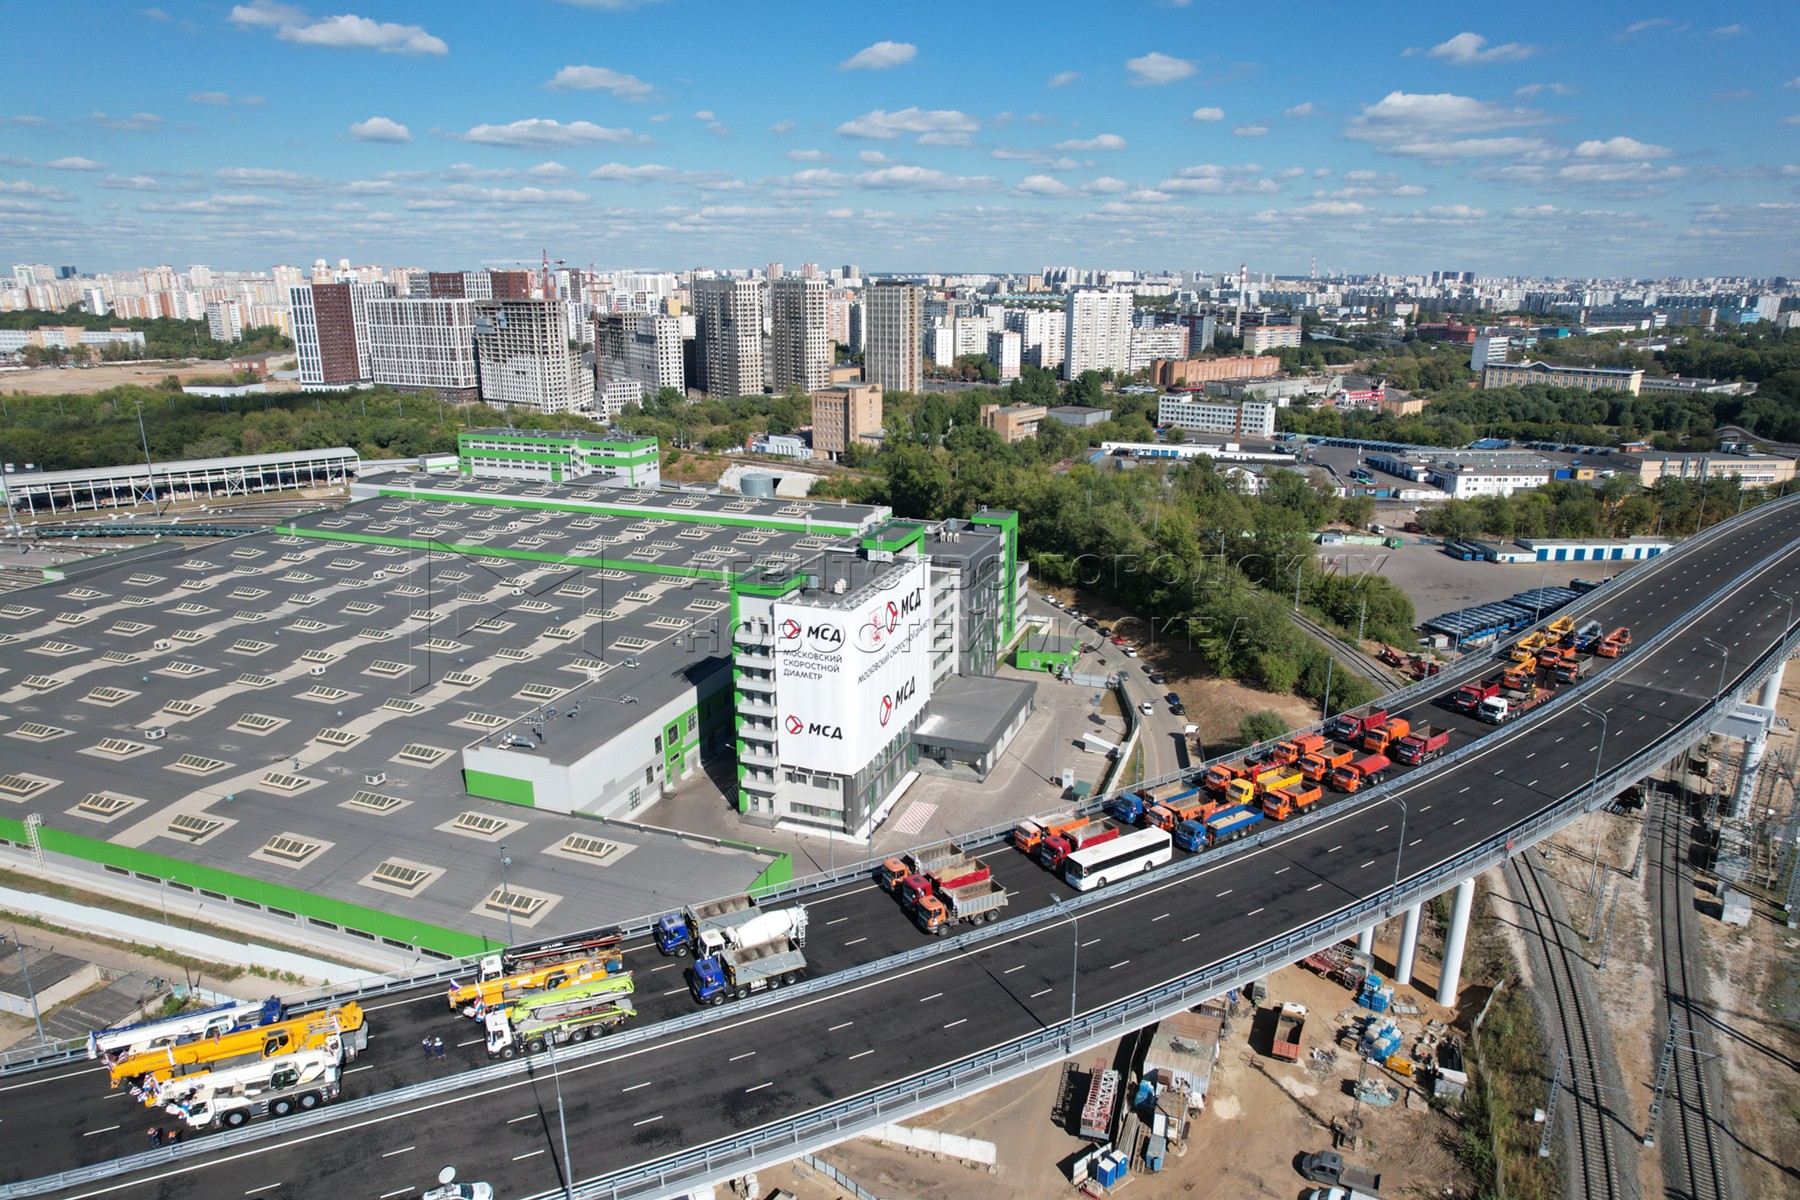 дмитровское шоссе москва фото